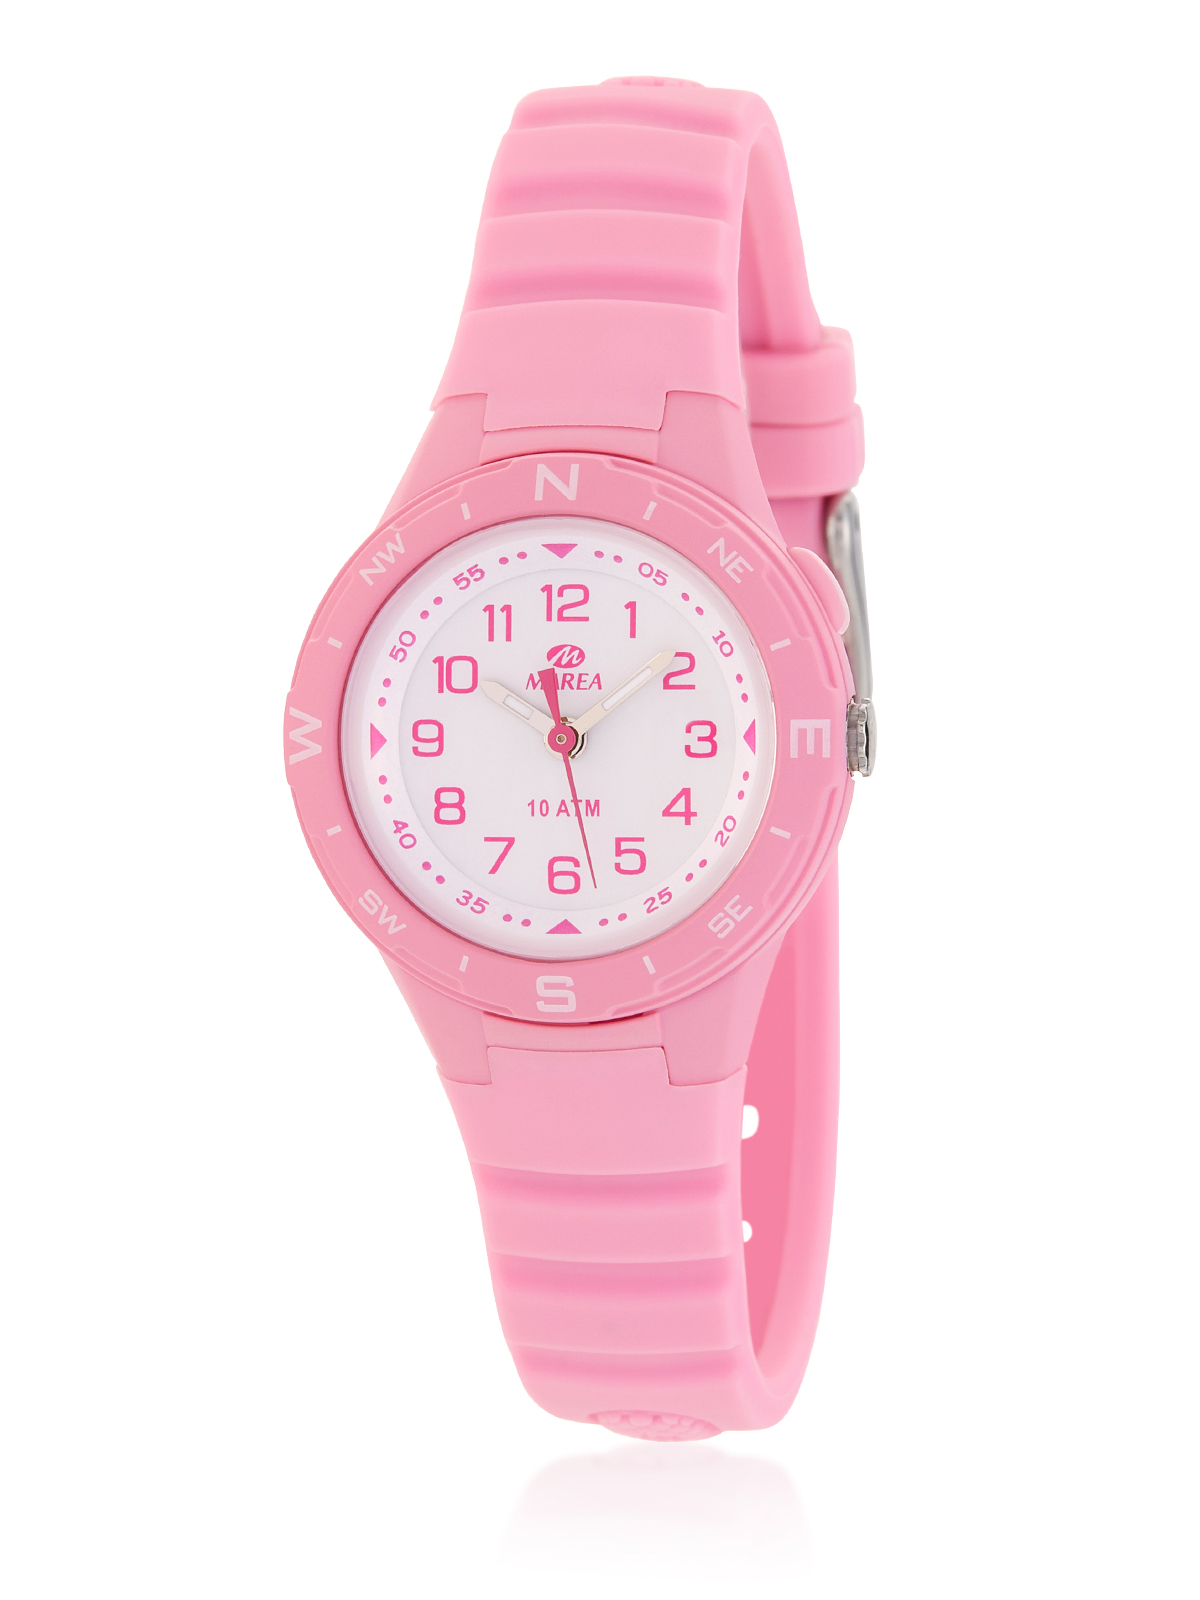 Reloj para niña de color rosa claro, marca Marea.